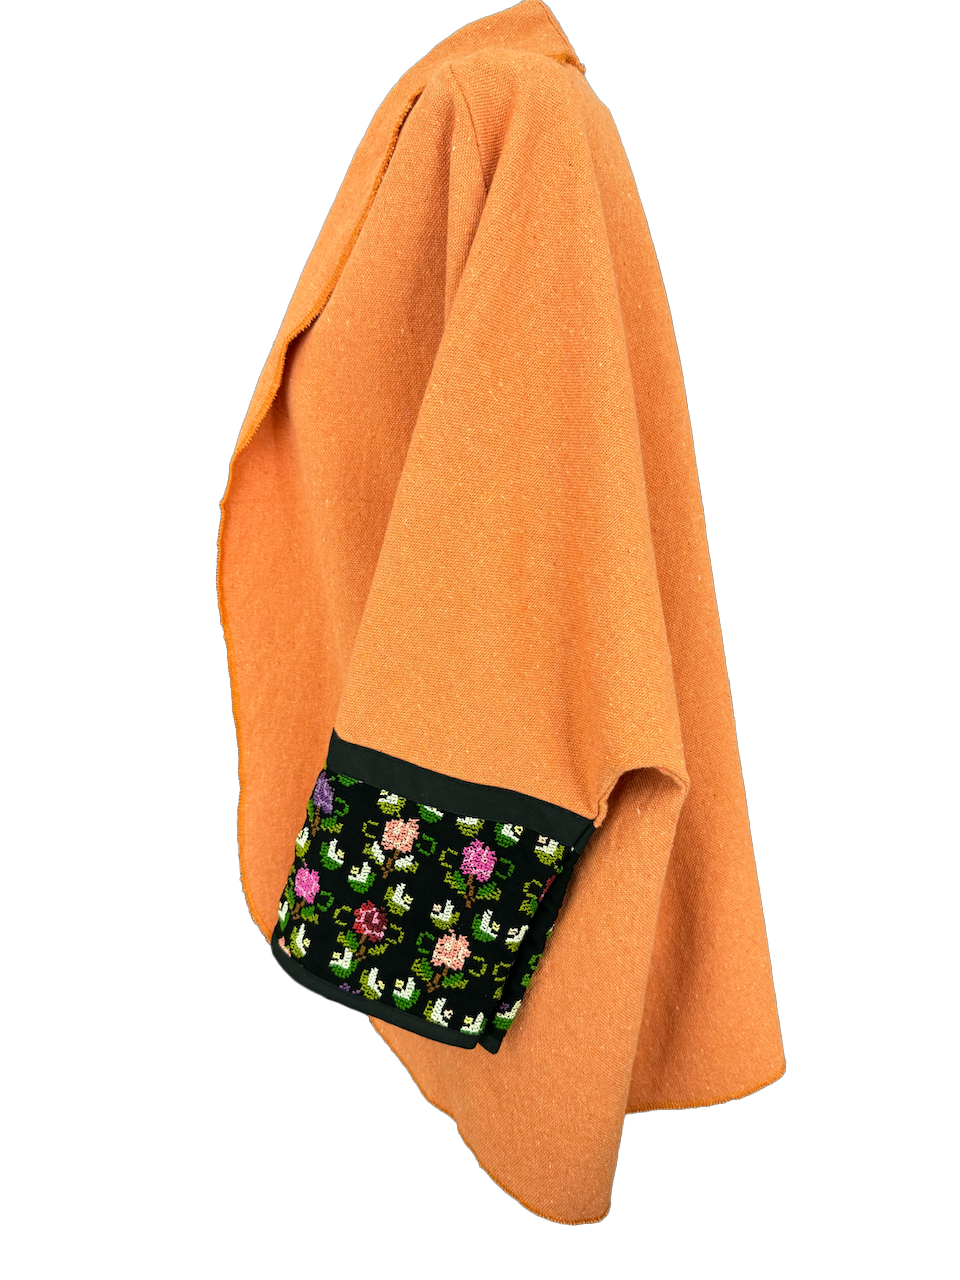 The Round Jacket in Orange Egyptian Cotton